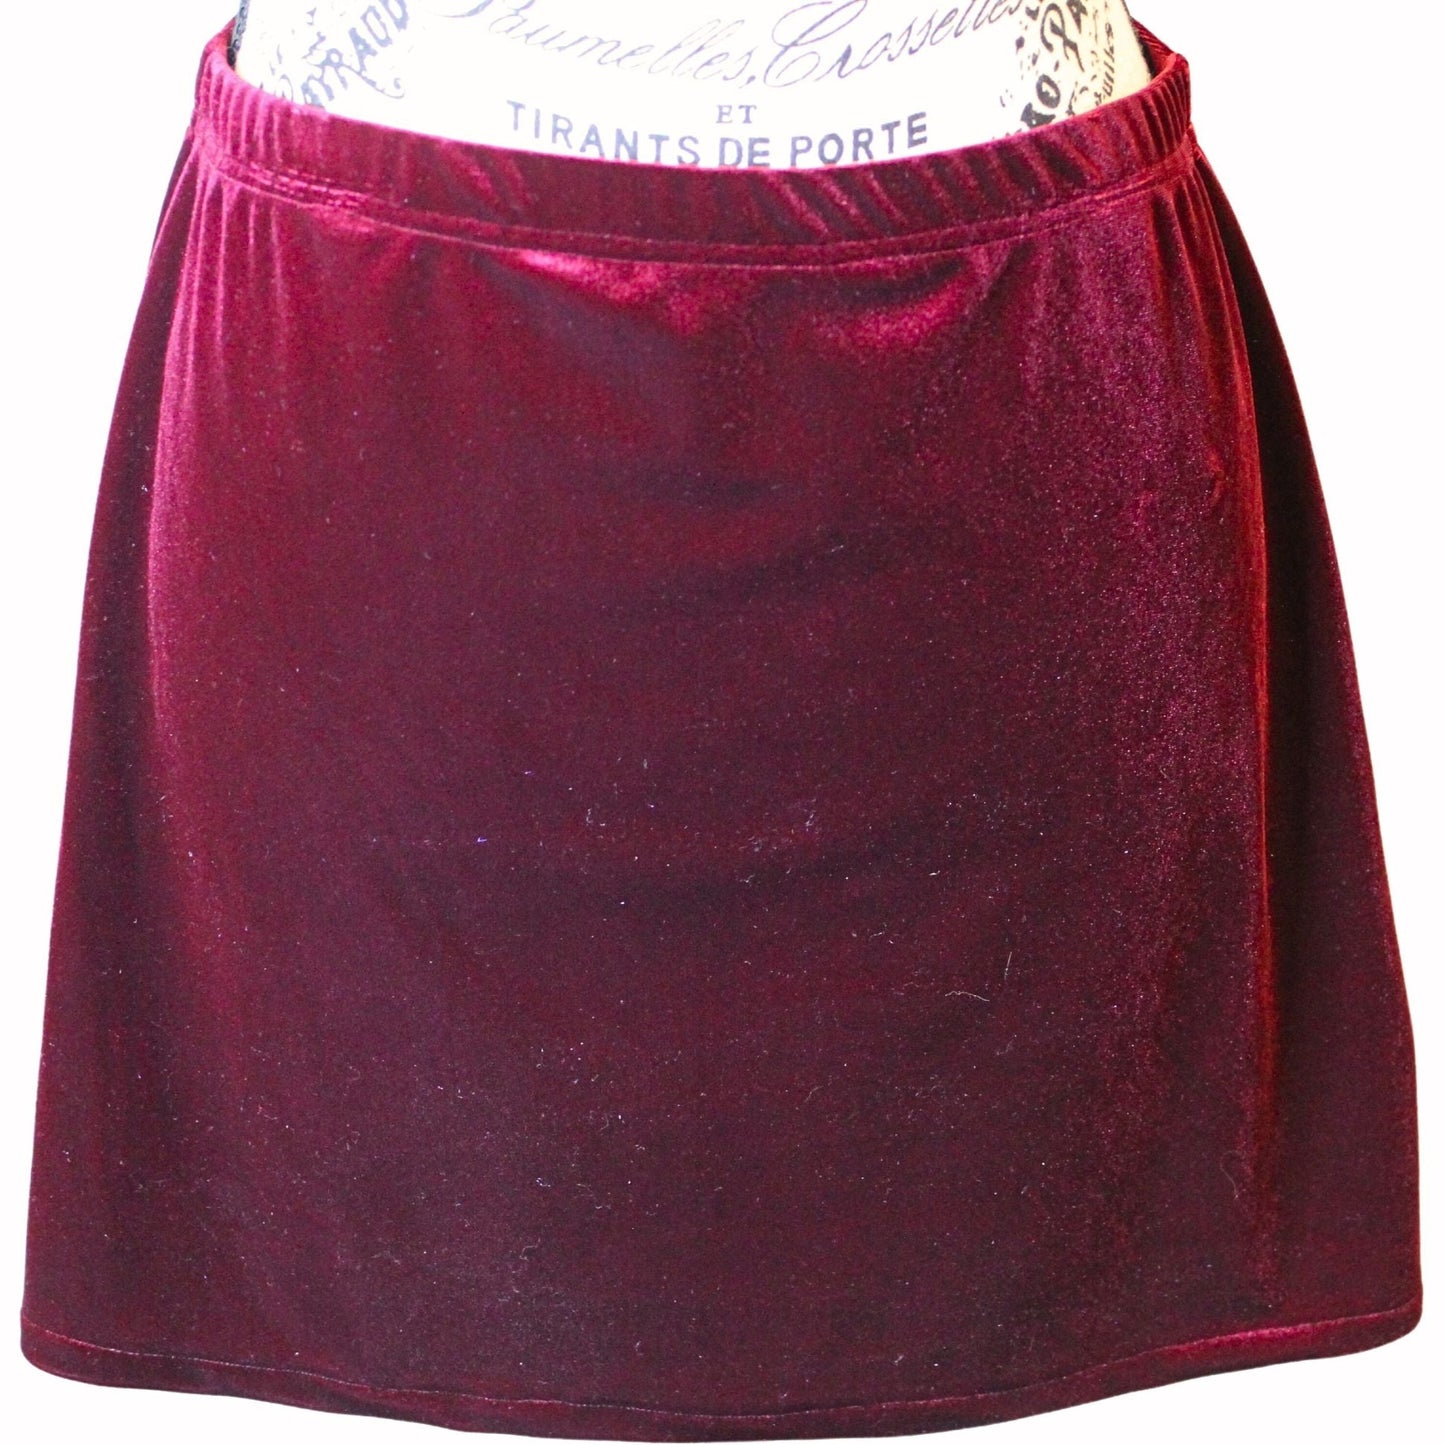 The VM Velvet Mini Skirt